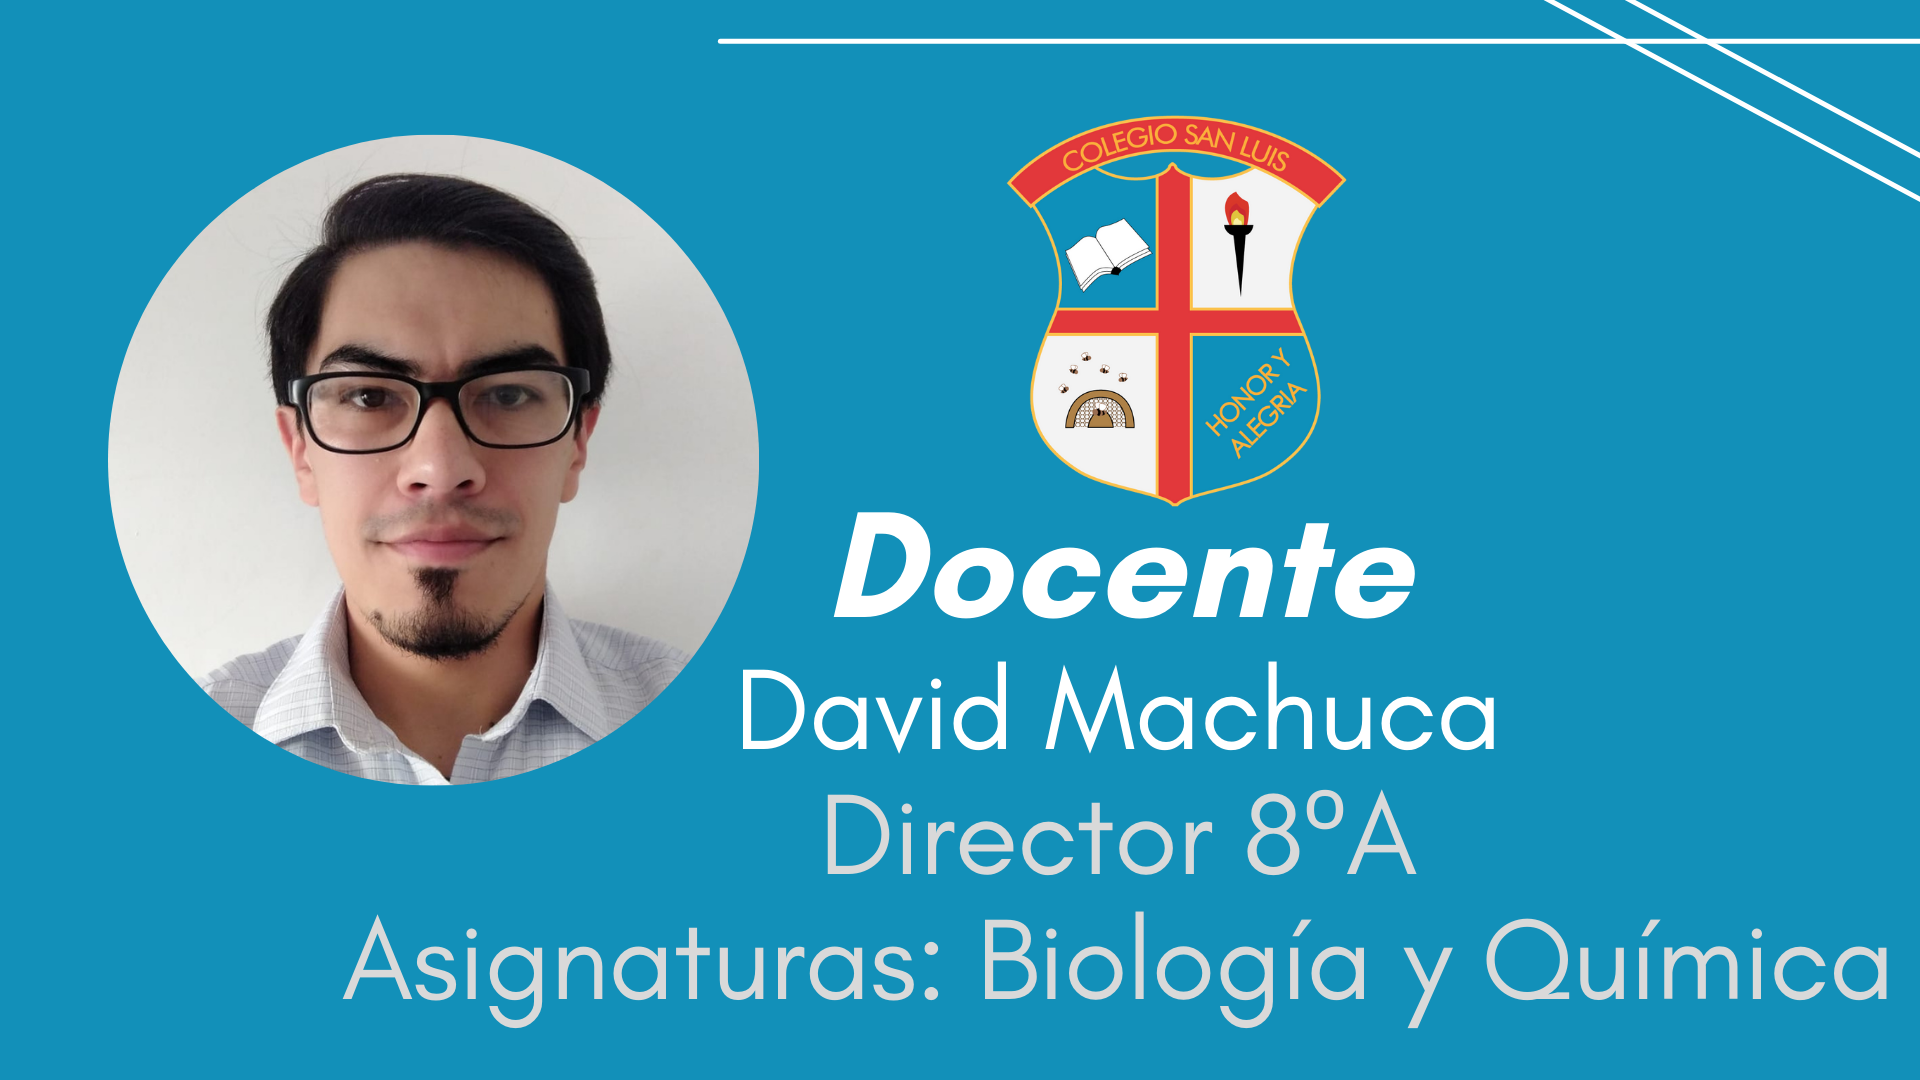 David Machuca